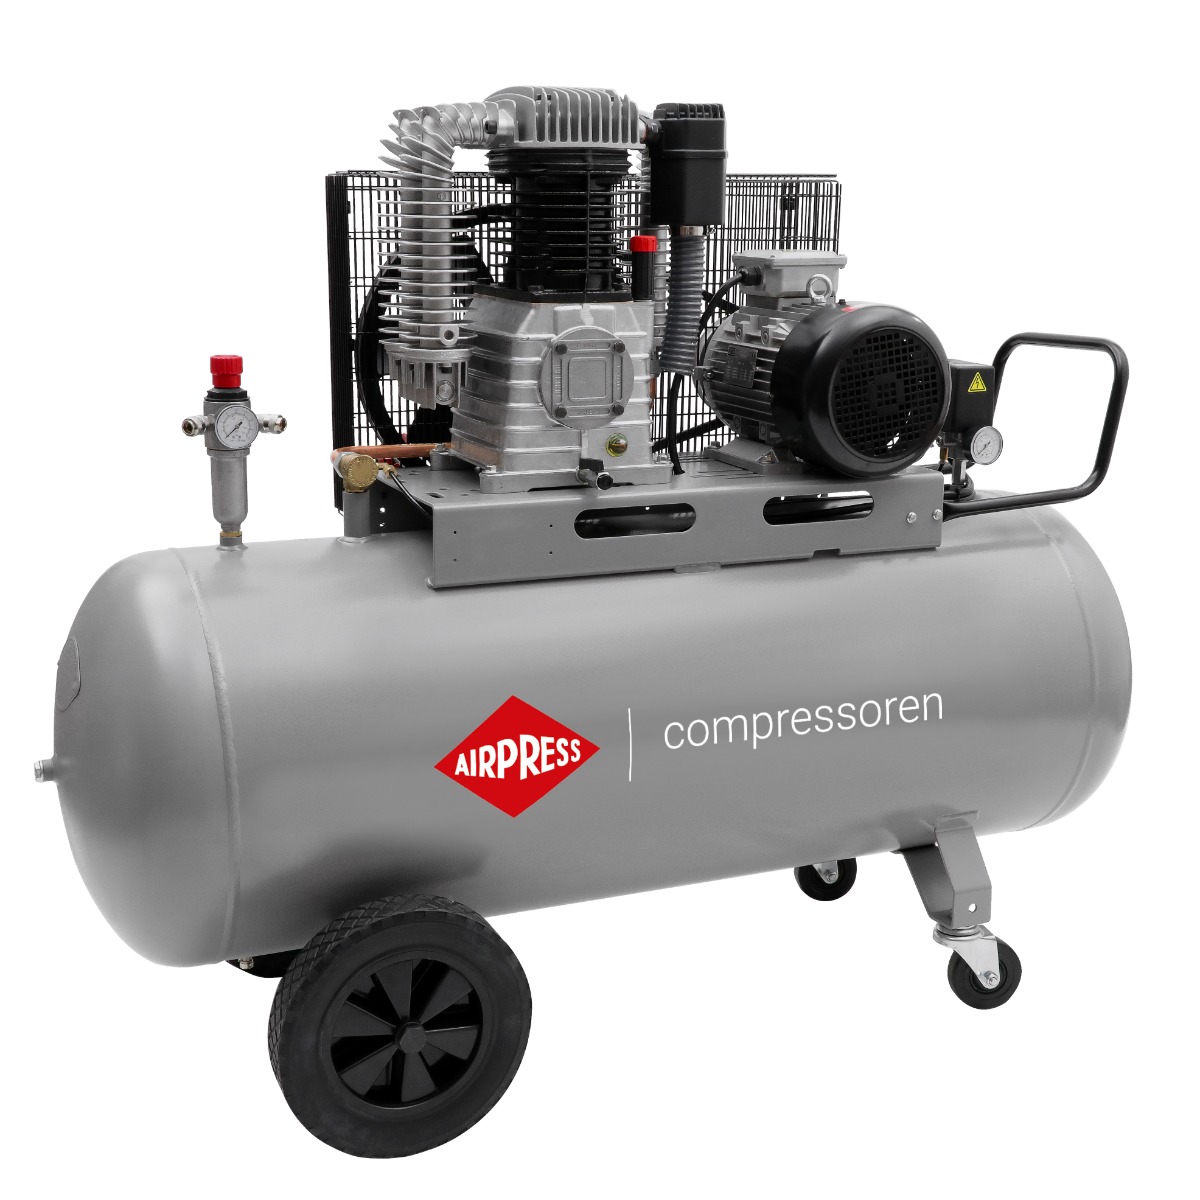 HK 1000-270 Pro compressor